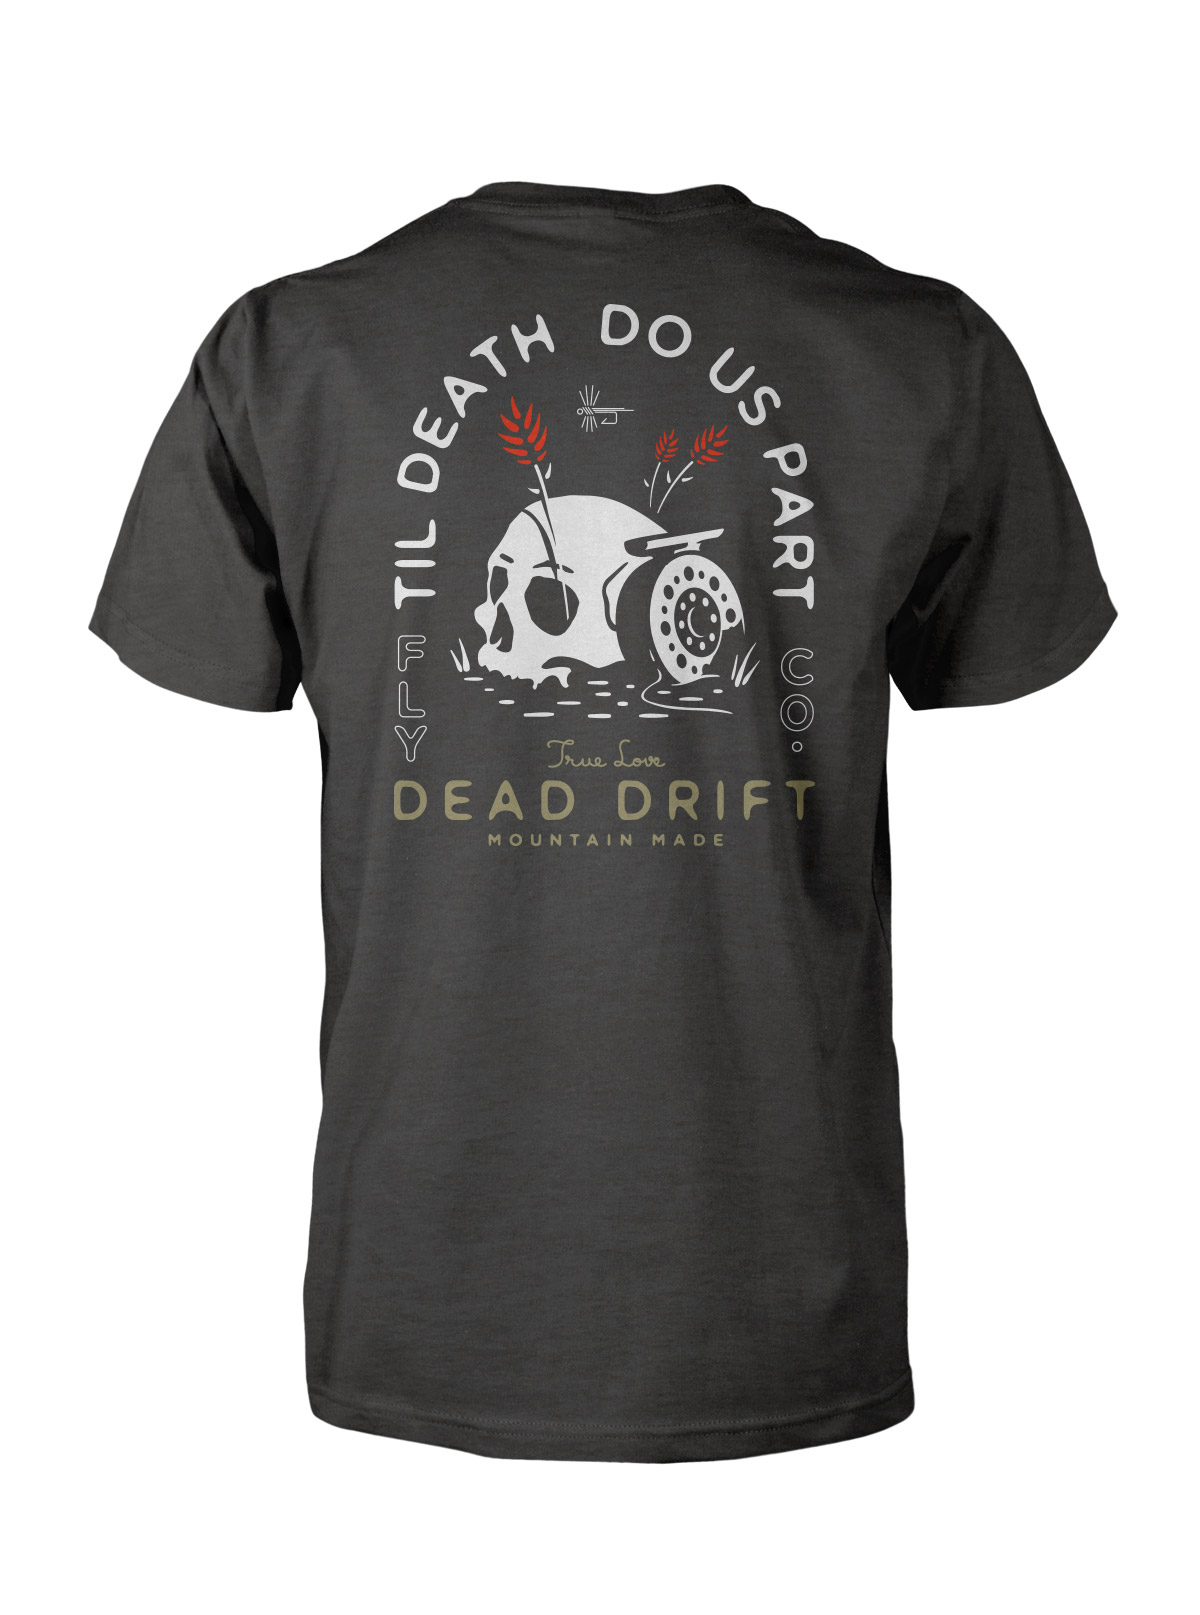 Til Death Tee — Dead Drift